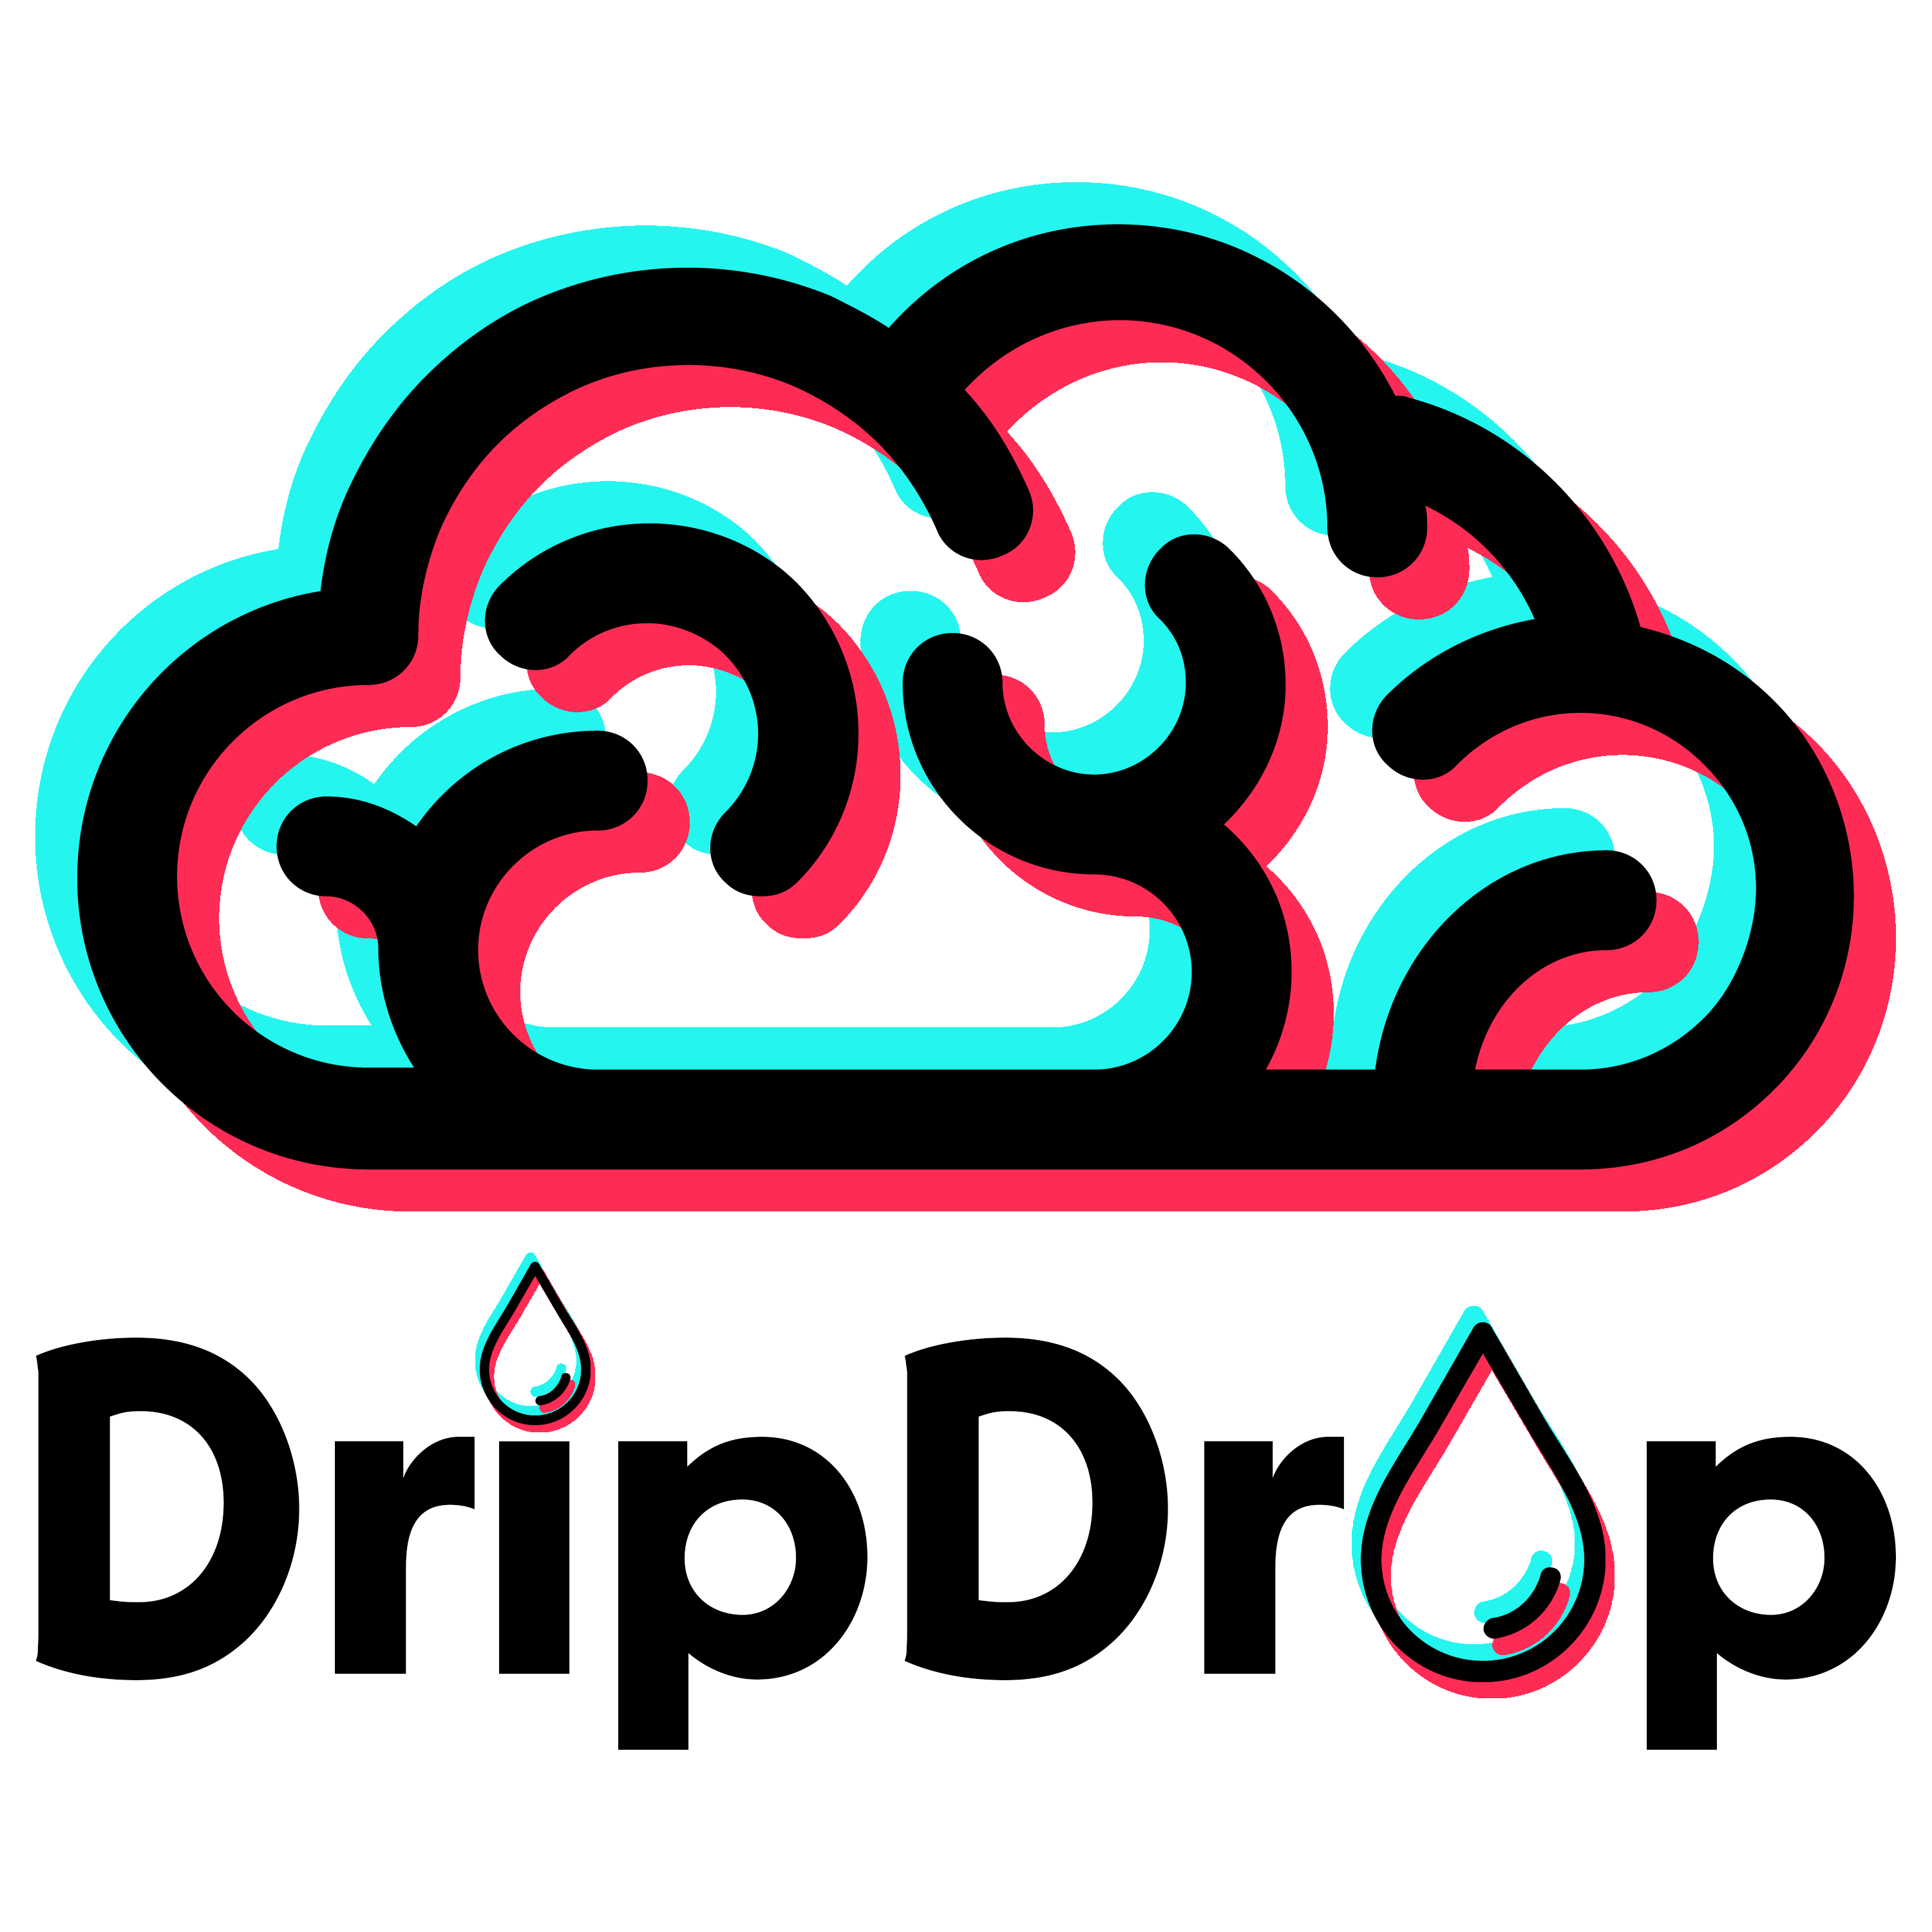 DripDrop